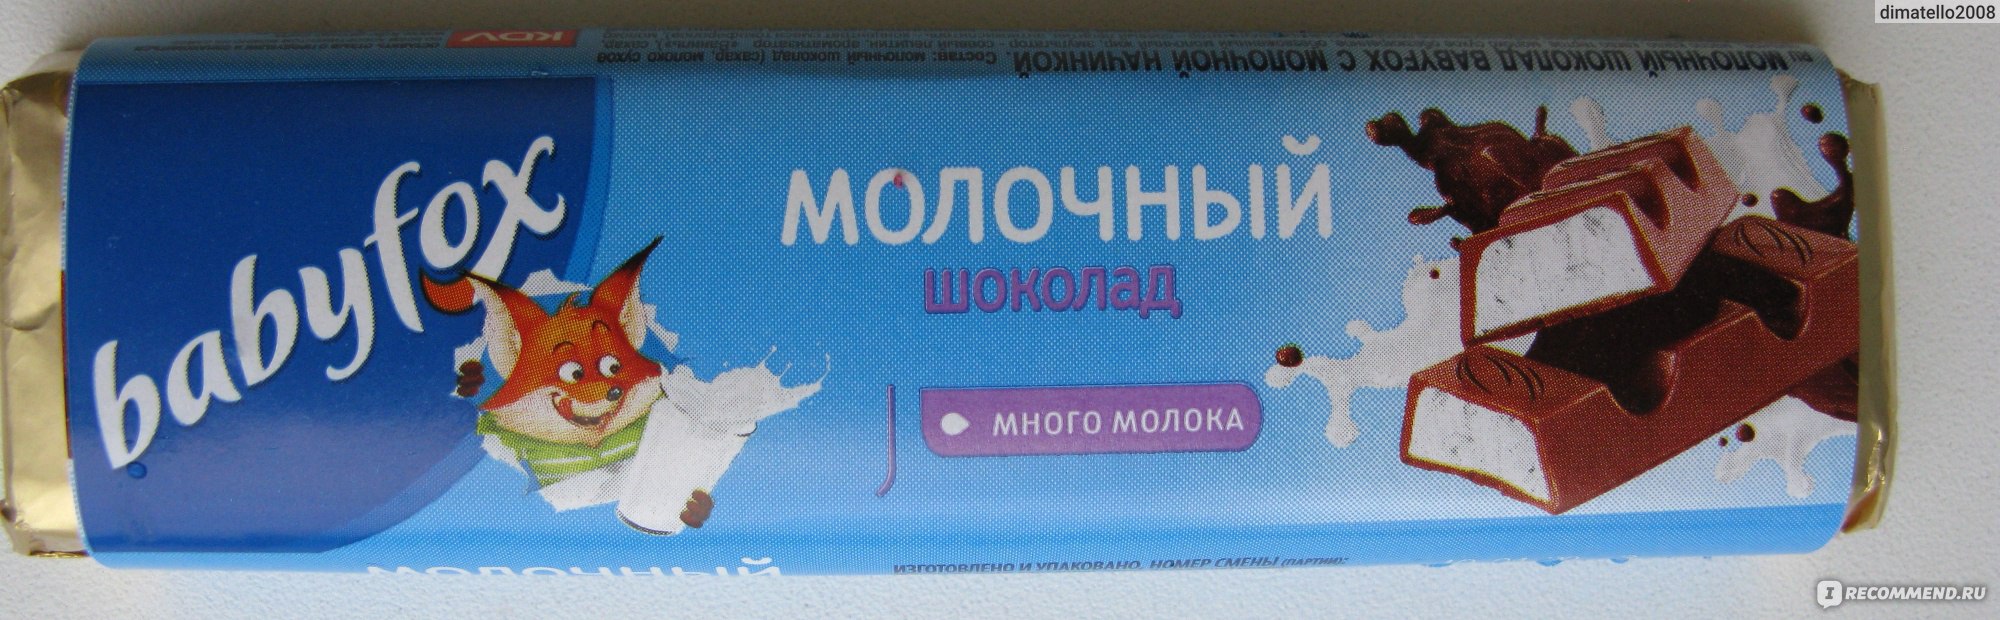 Babyfox молочный шоколад